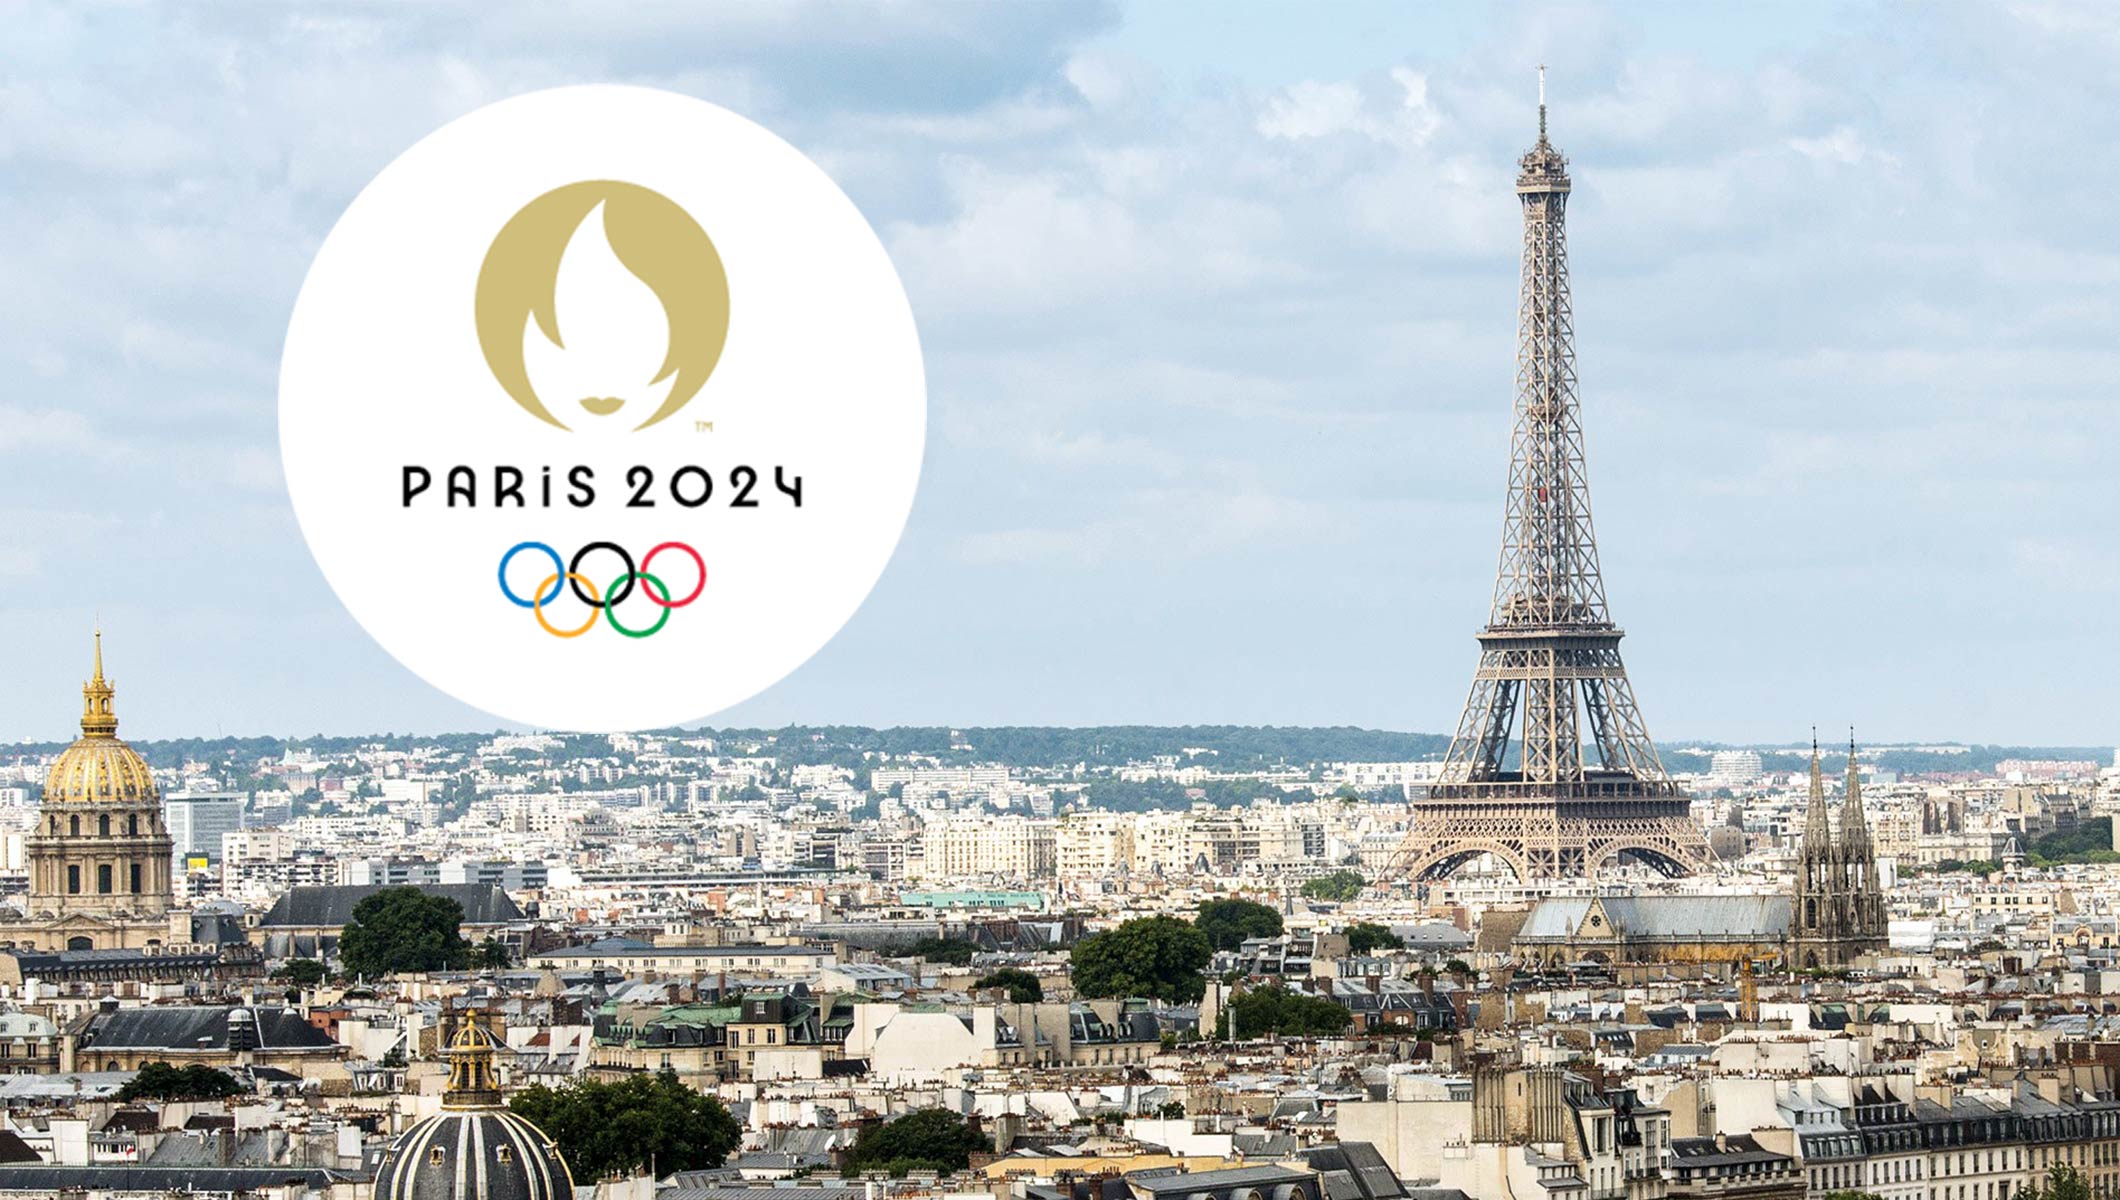 2024年巴黎奥运会品牌设计 - 视觉同盟(VisionUnion.com)